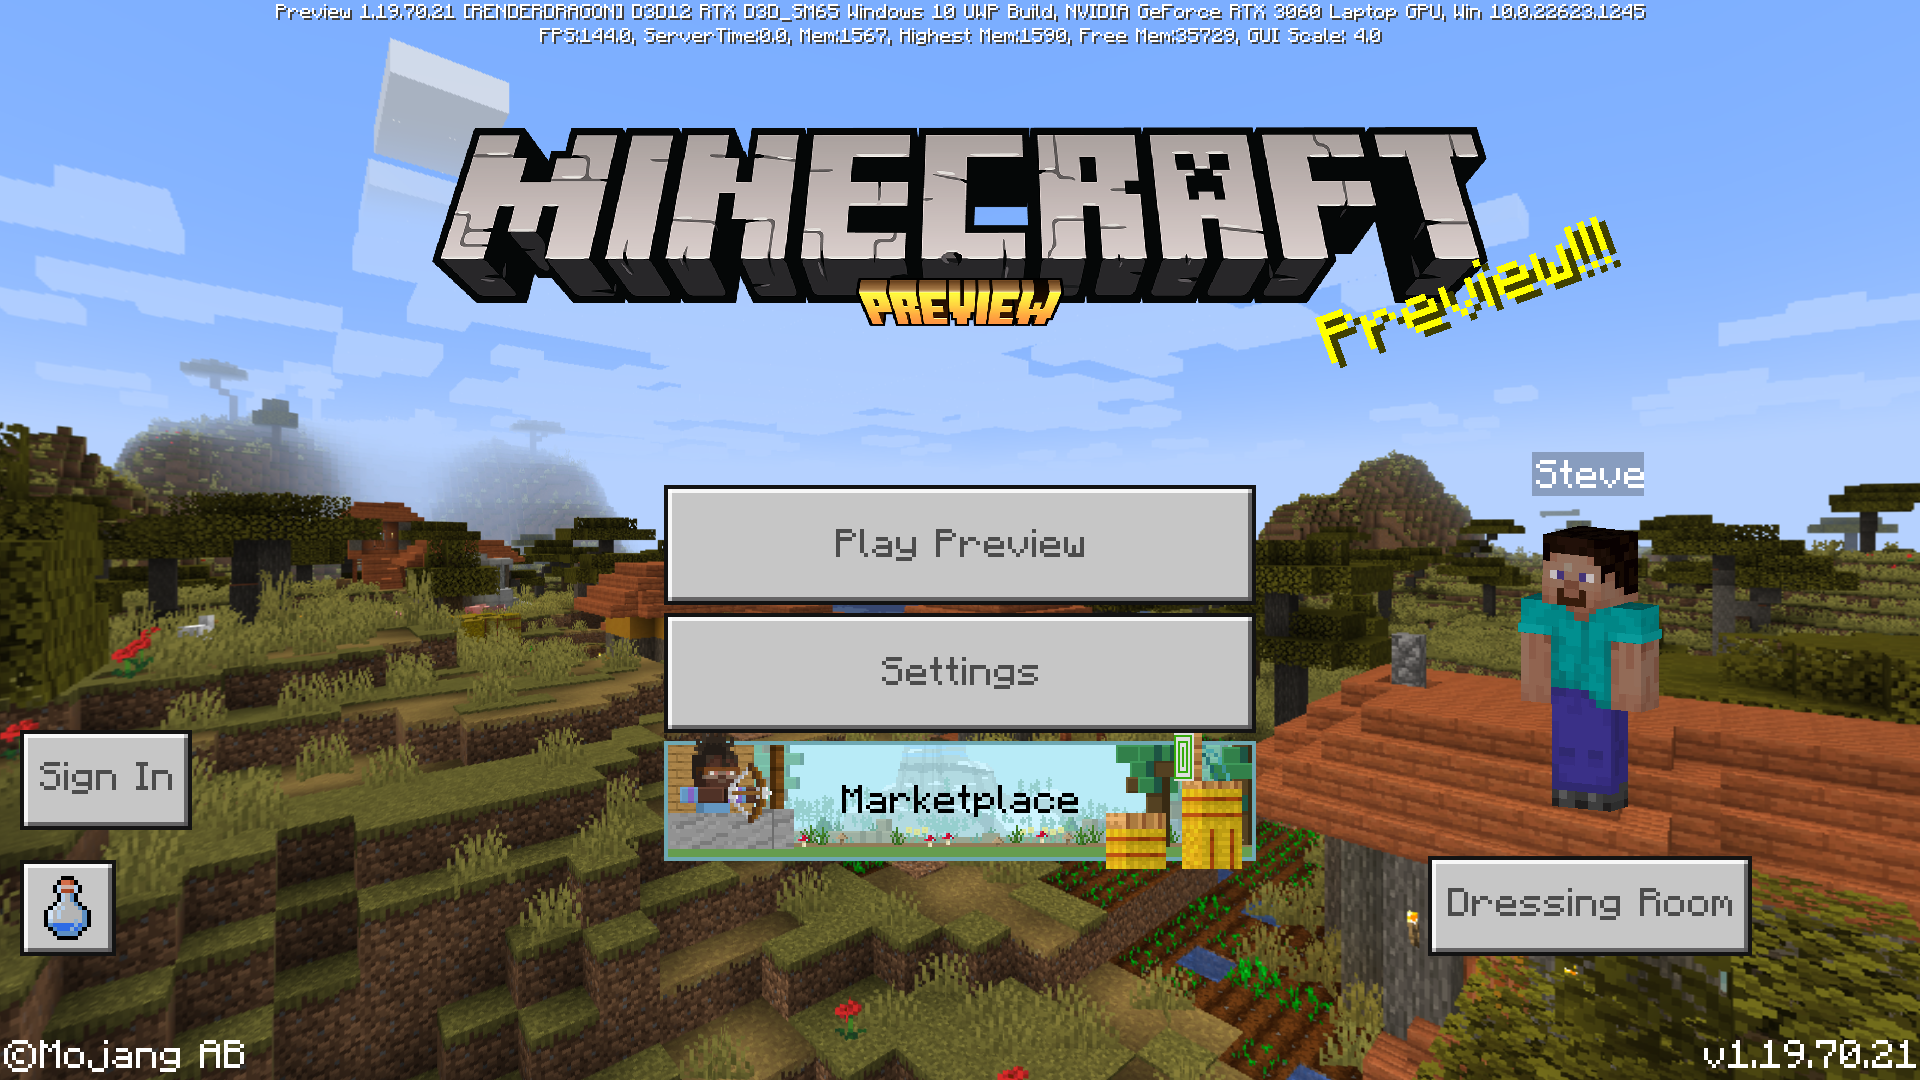 Download Minecraft PE 1.9.0 apk free: Village & Pillage